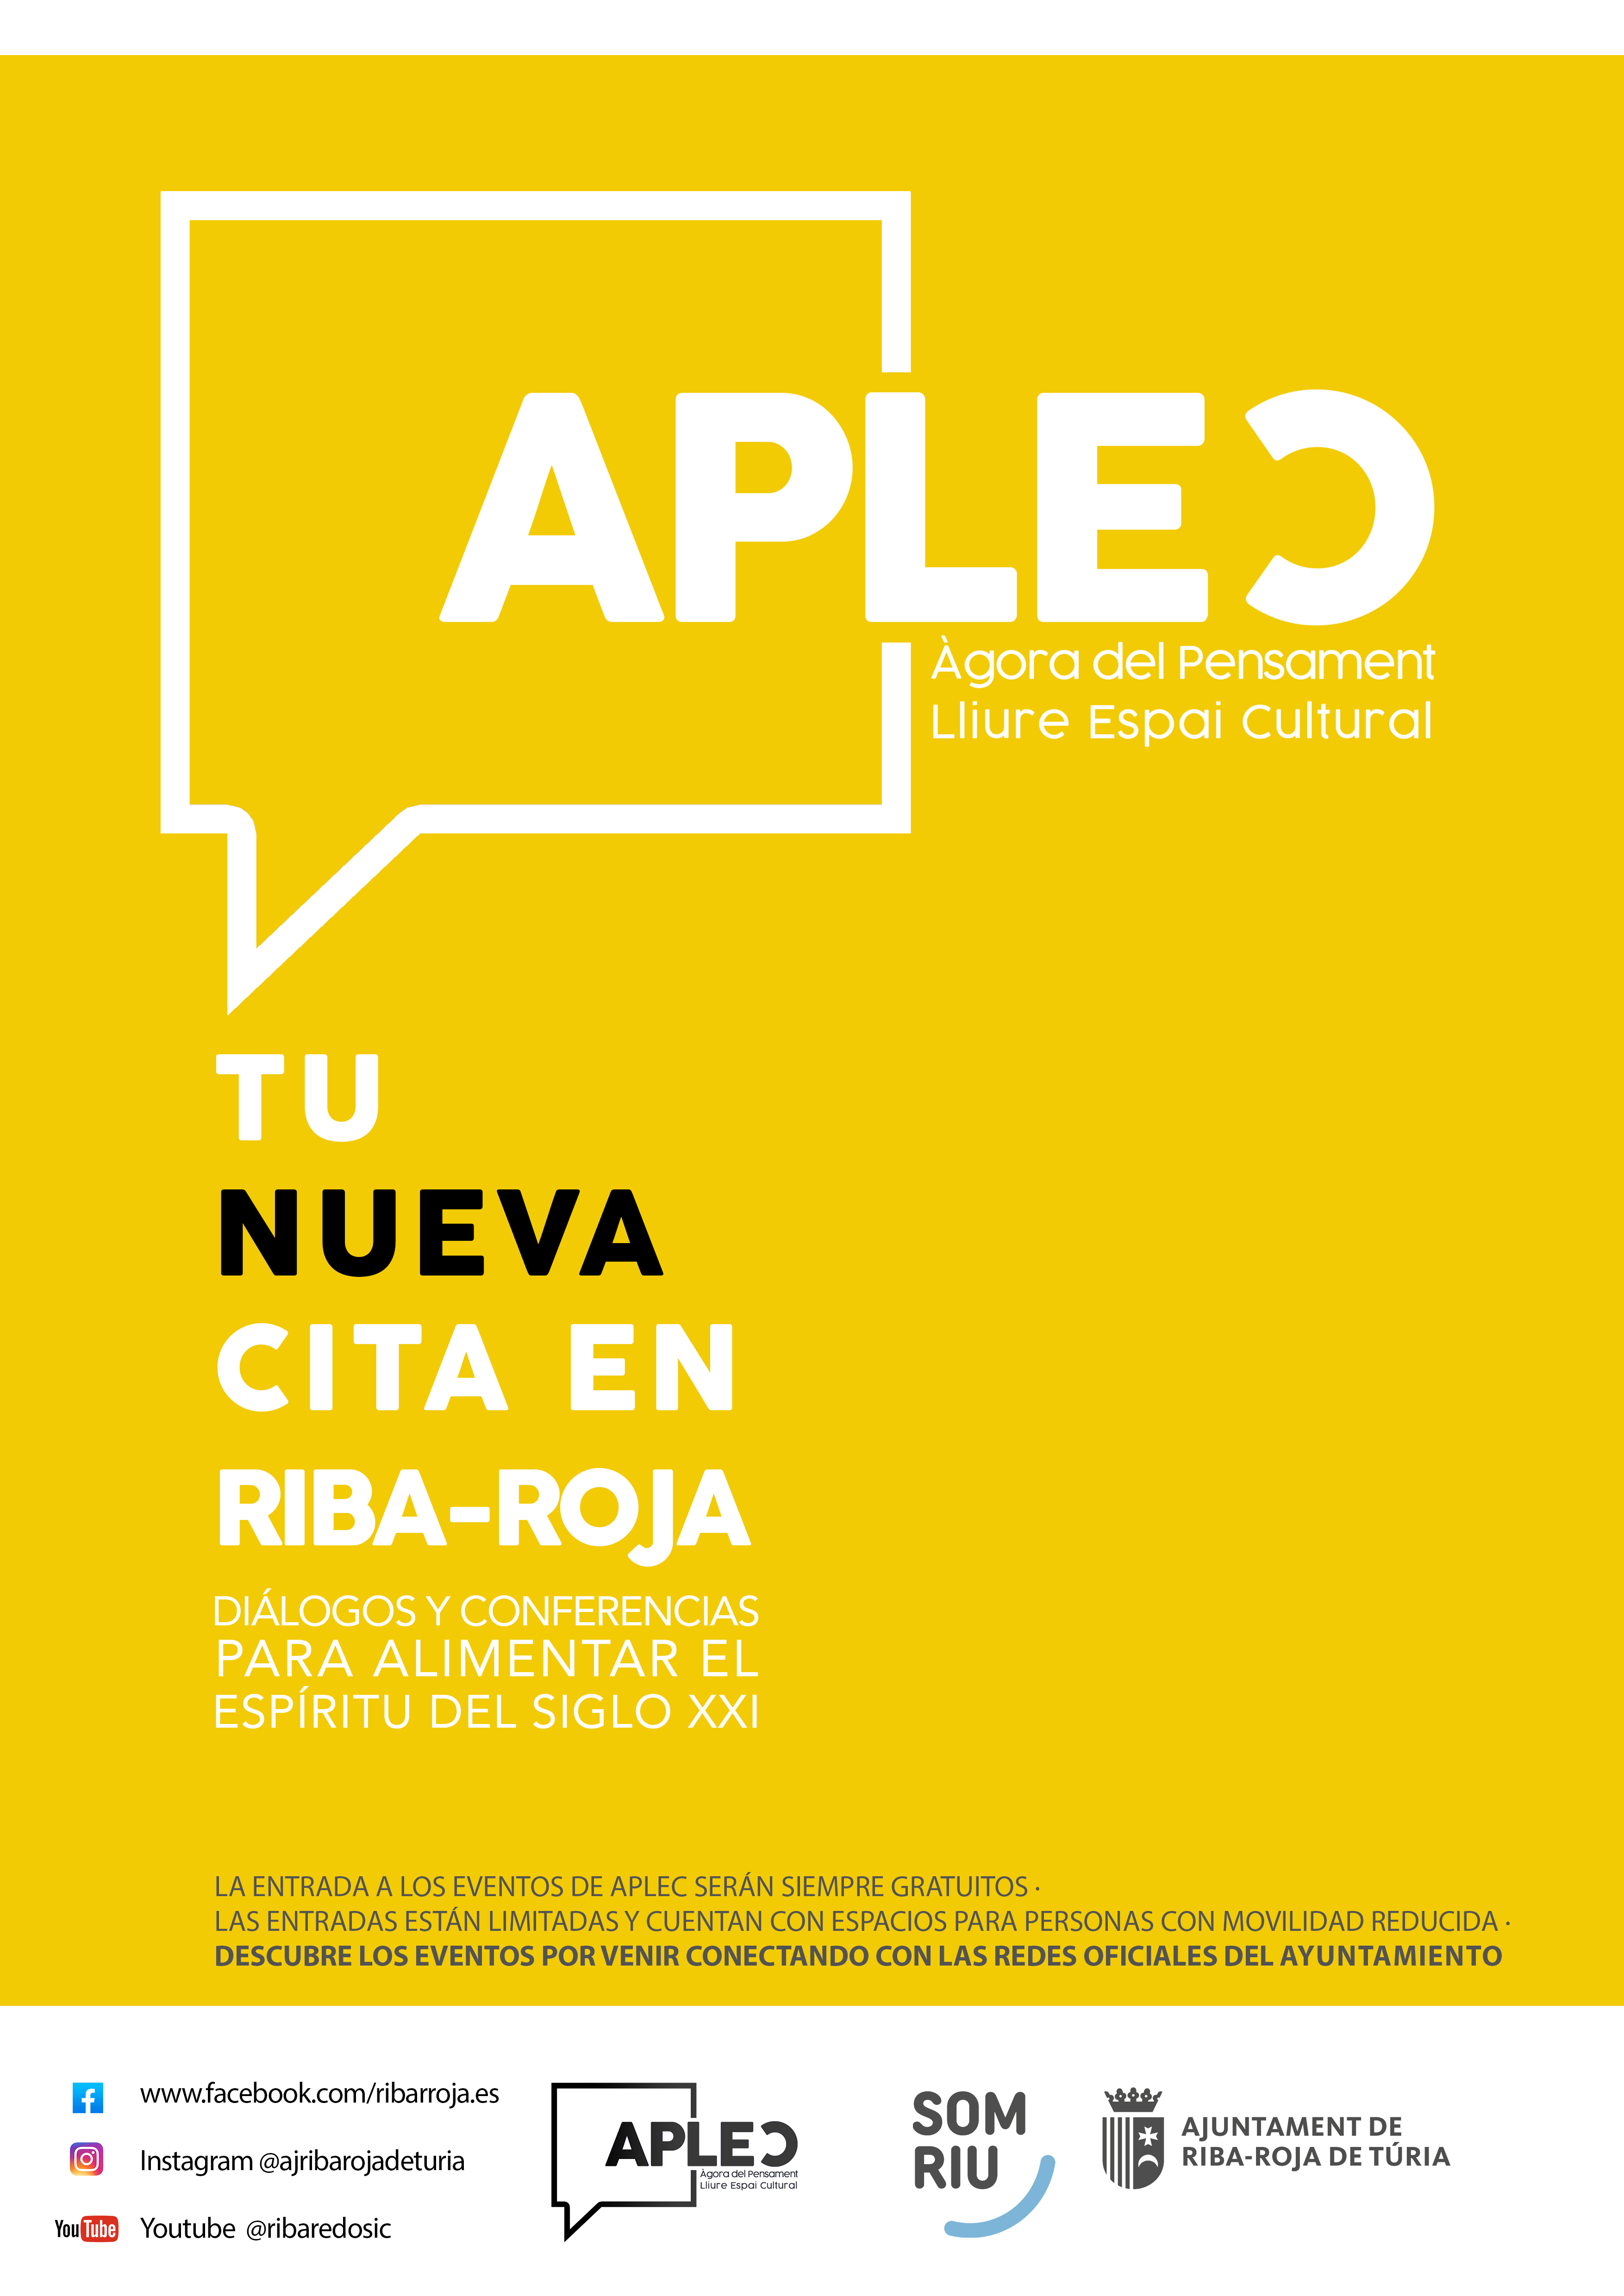 Riba-roja lanza APLEC, la nueva cita para el pensamiento intelectual y crtico